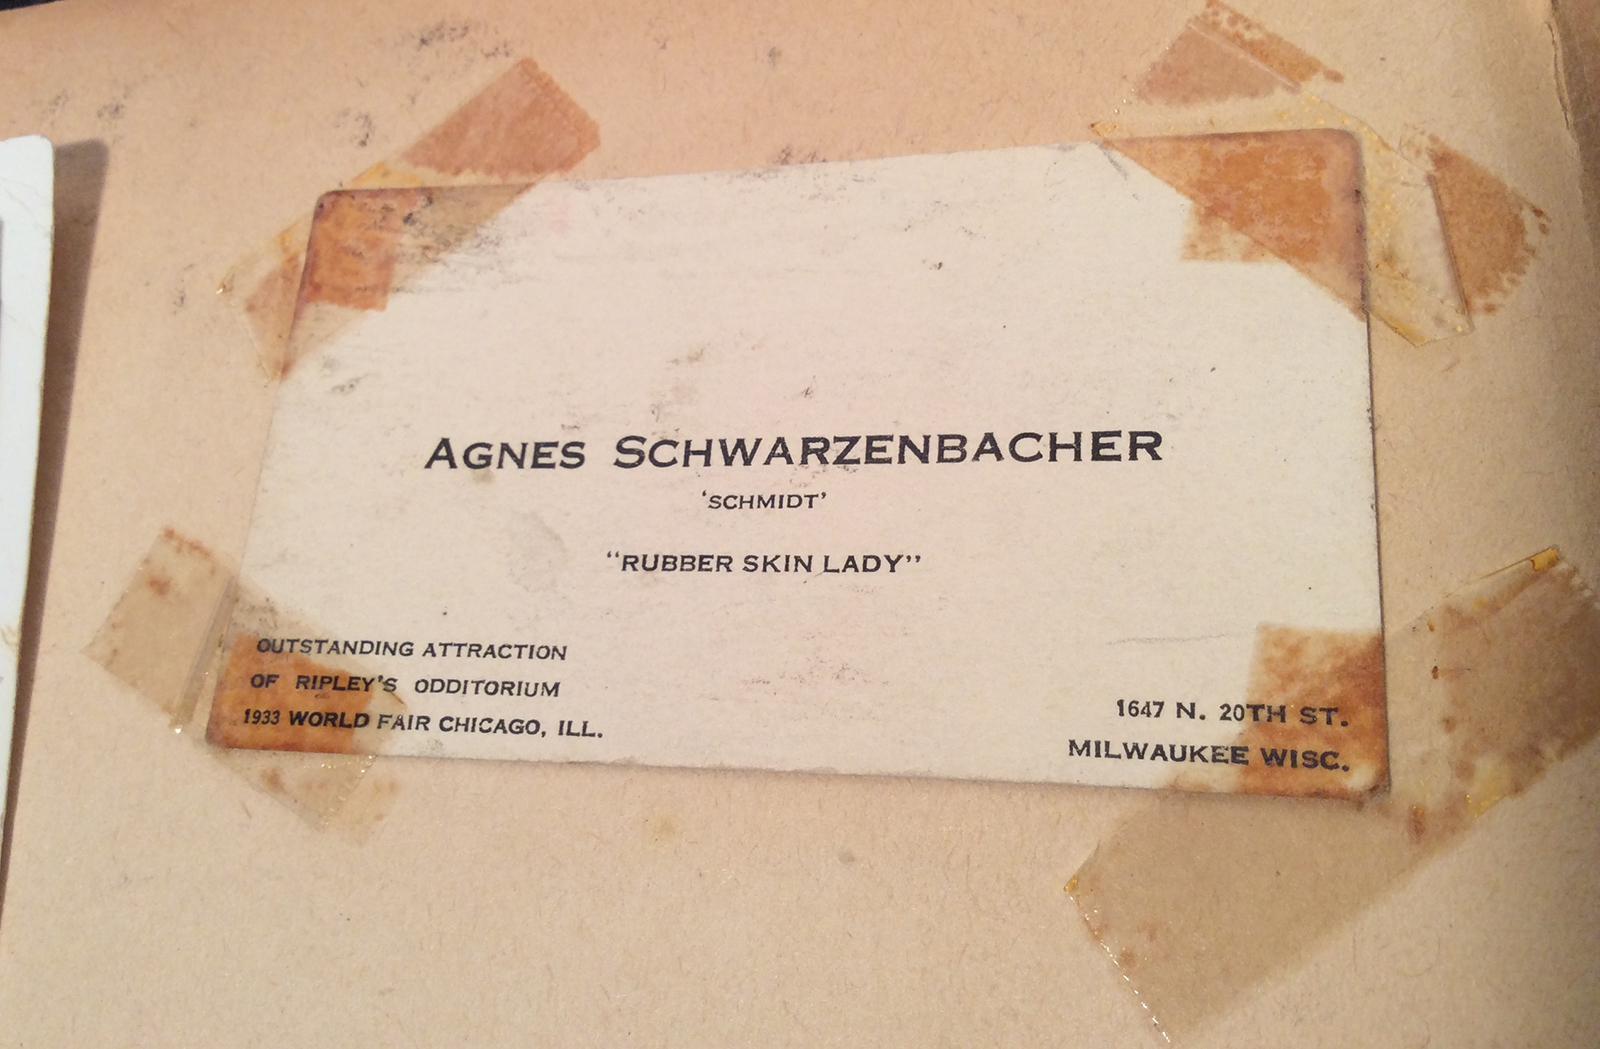 Agnes's business card. Photo courtesy of Dori Ann Bischmann, PhD.